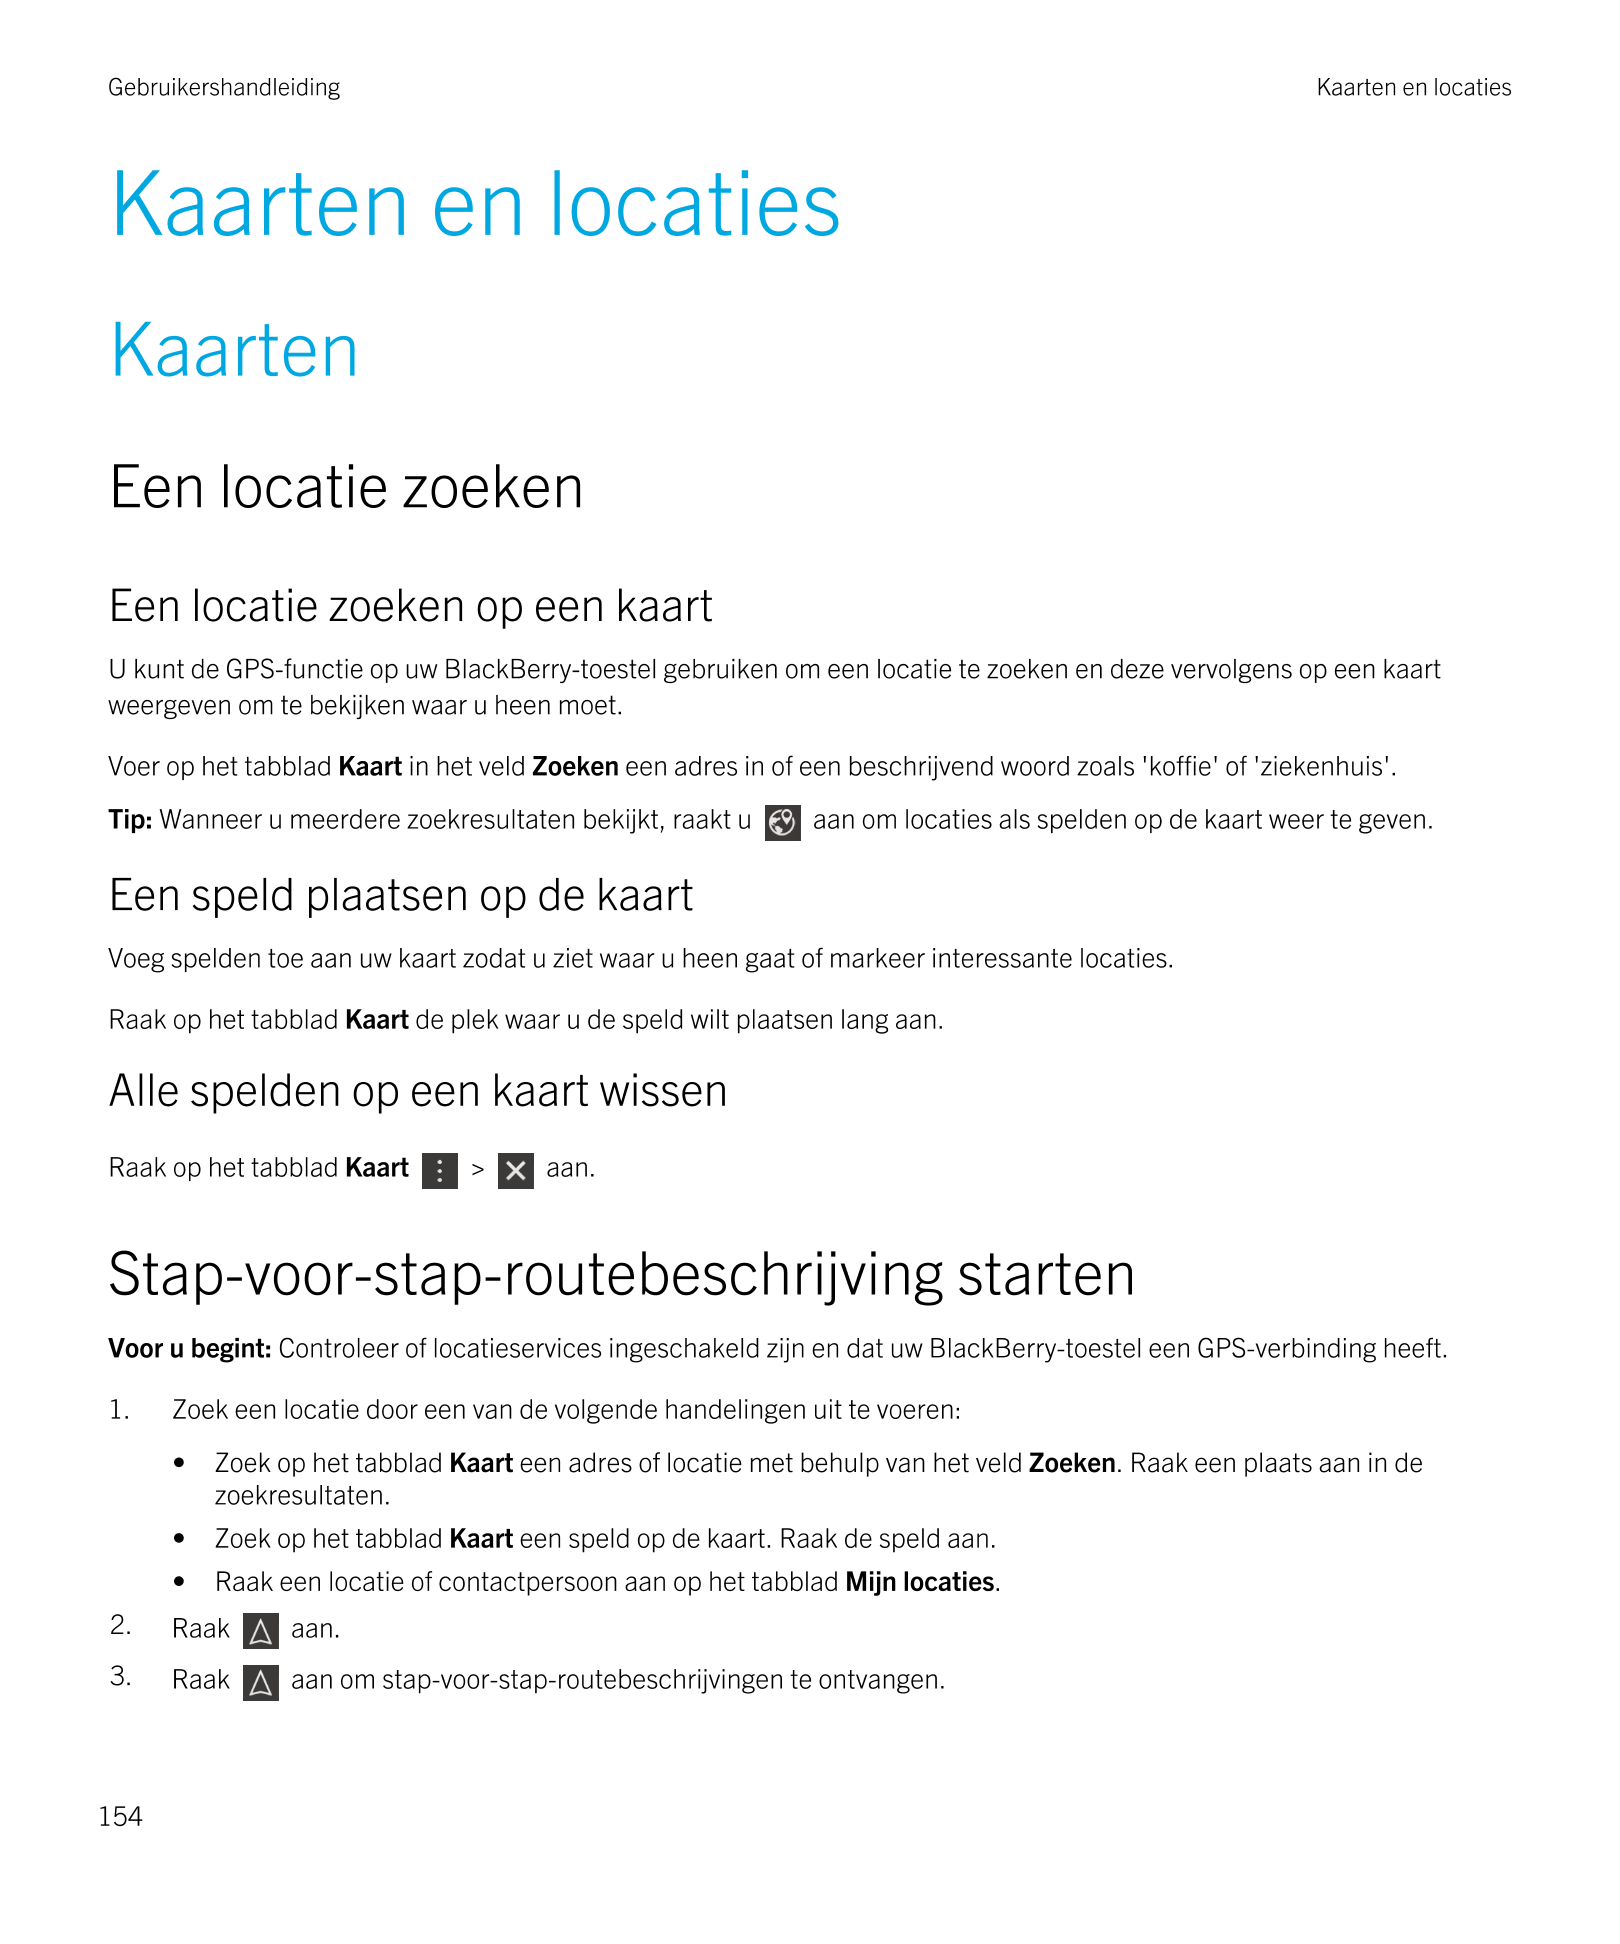 Gebruikershandleiding Kaarten en locaties
Kaarten en locaties
Kaarten
Een locatie zoeken
Een locatie zoeken op een kaart
U kunt 